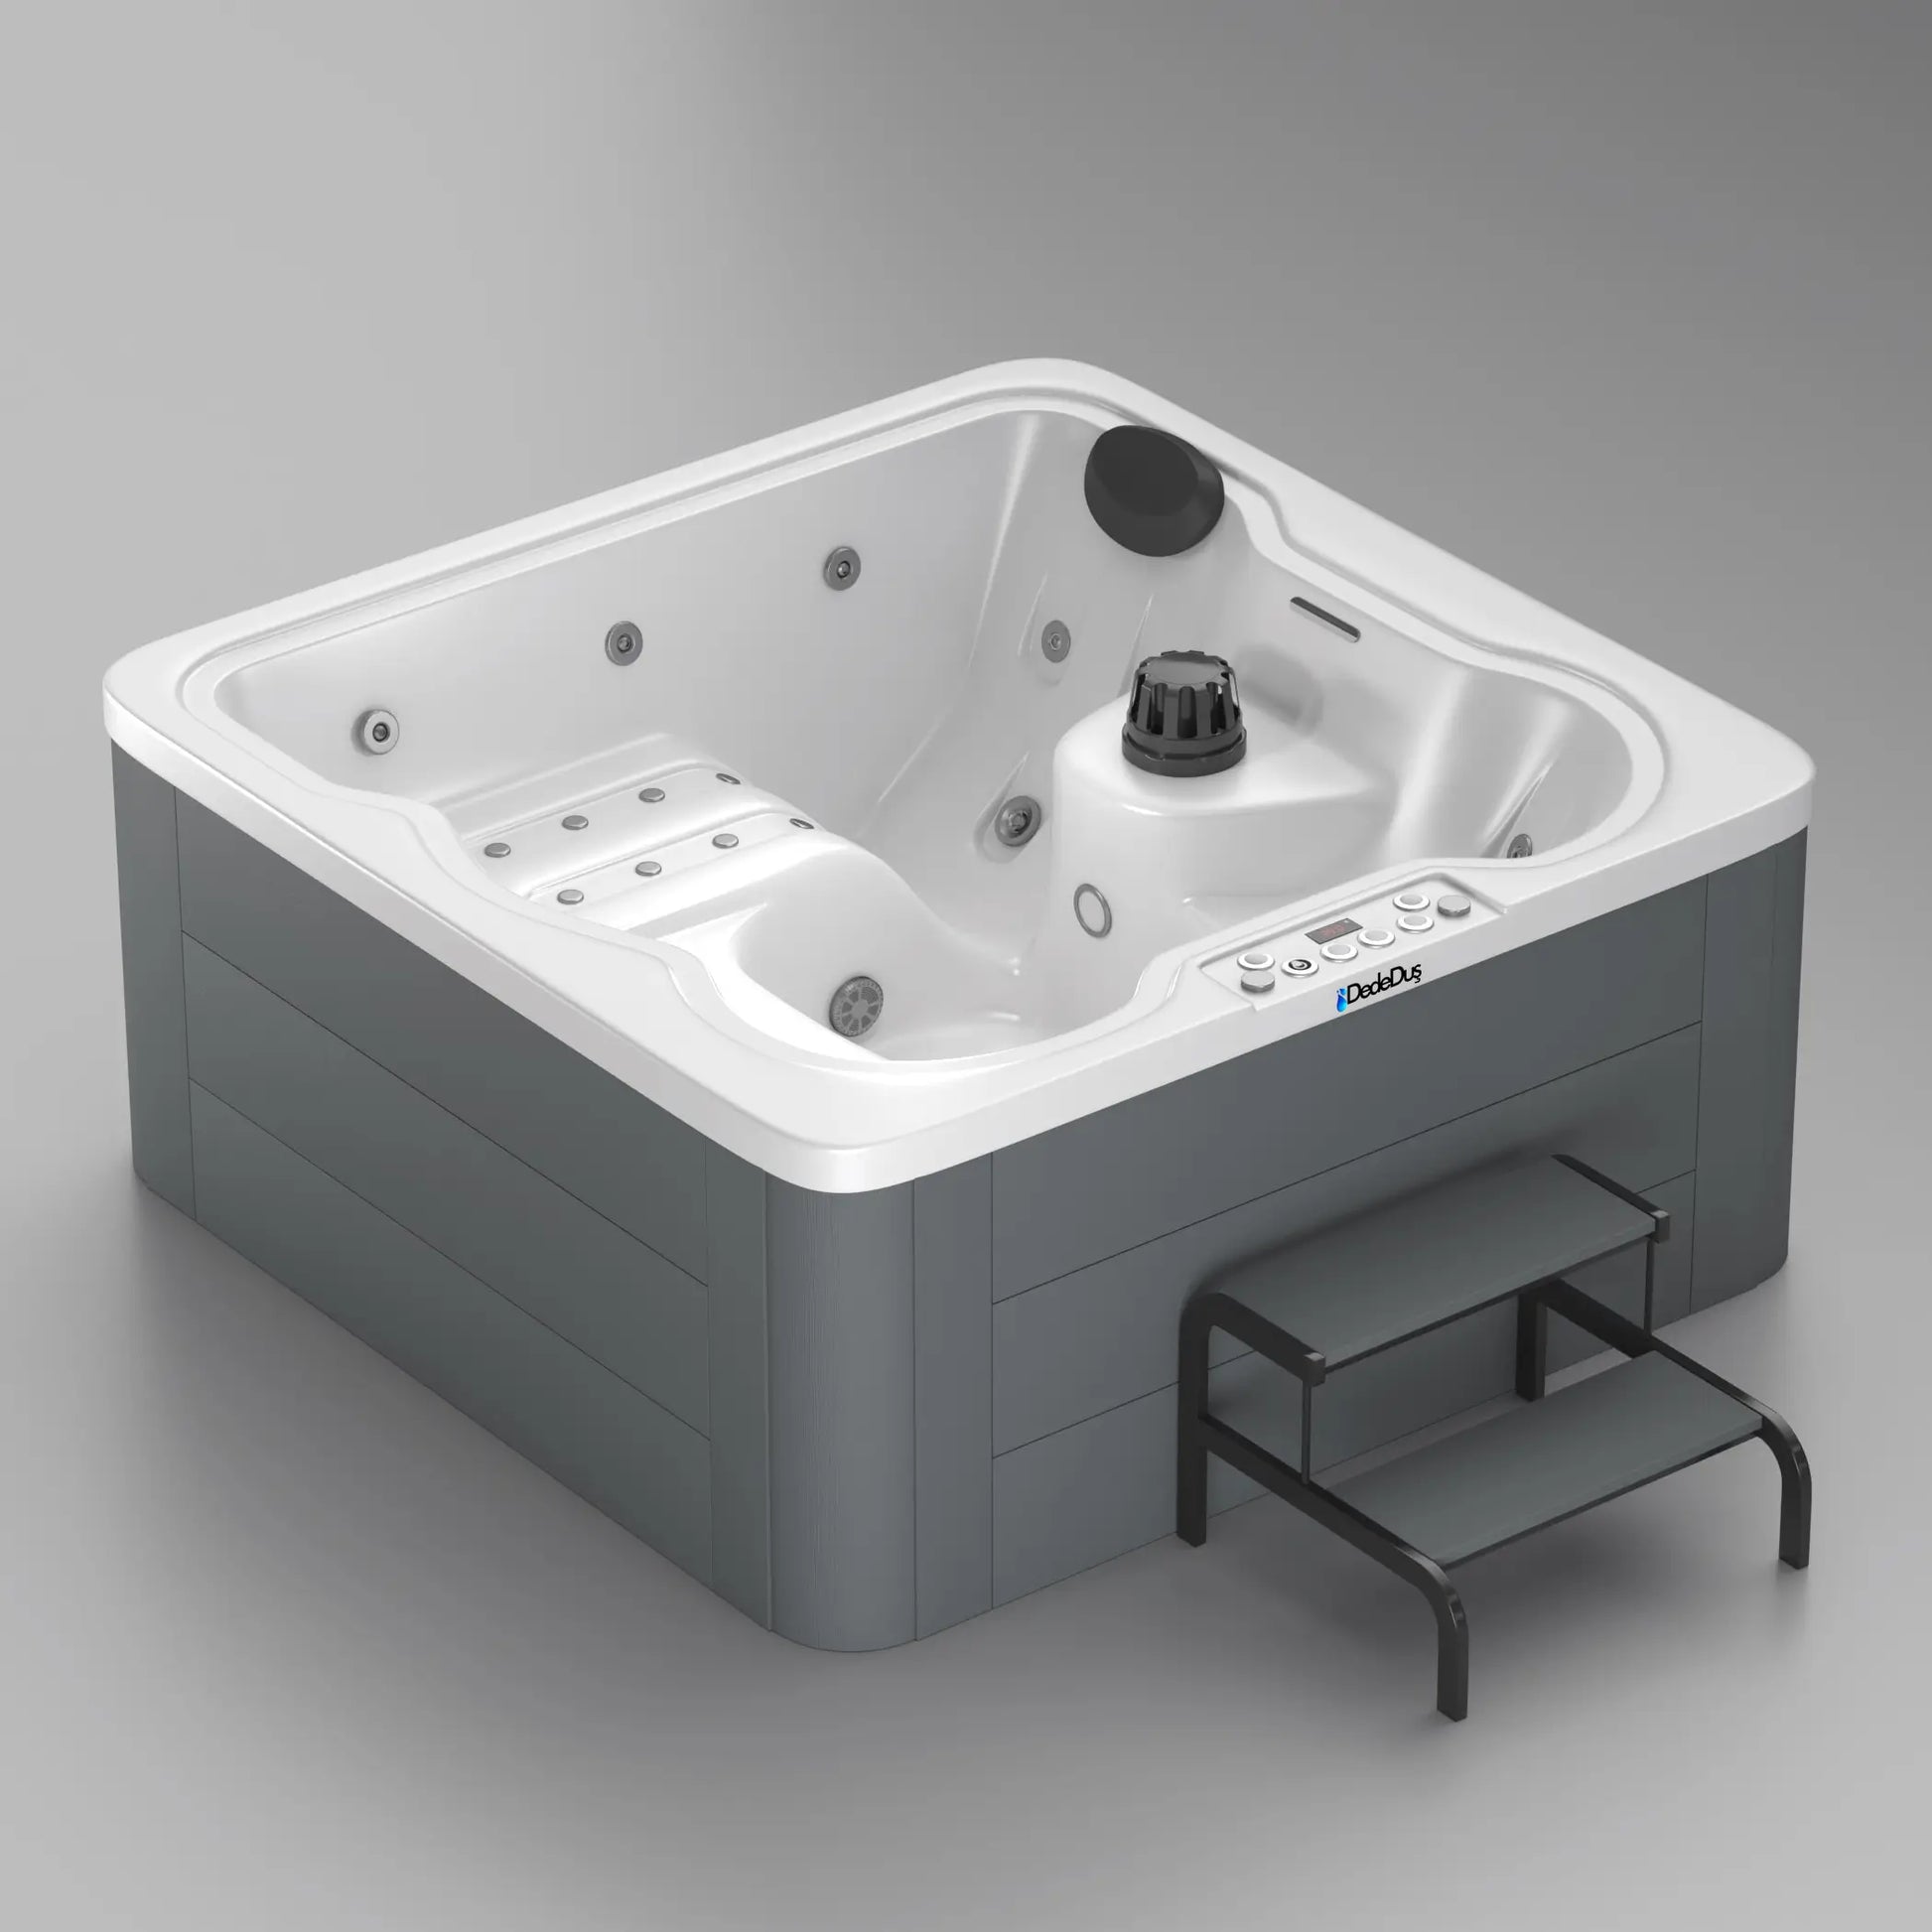 178x178cm, Mira Hybrid spa hot tub, Turkey